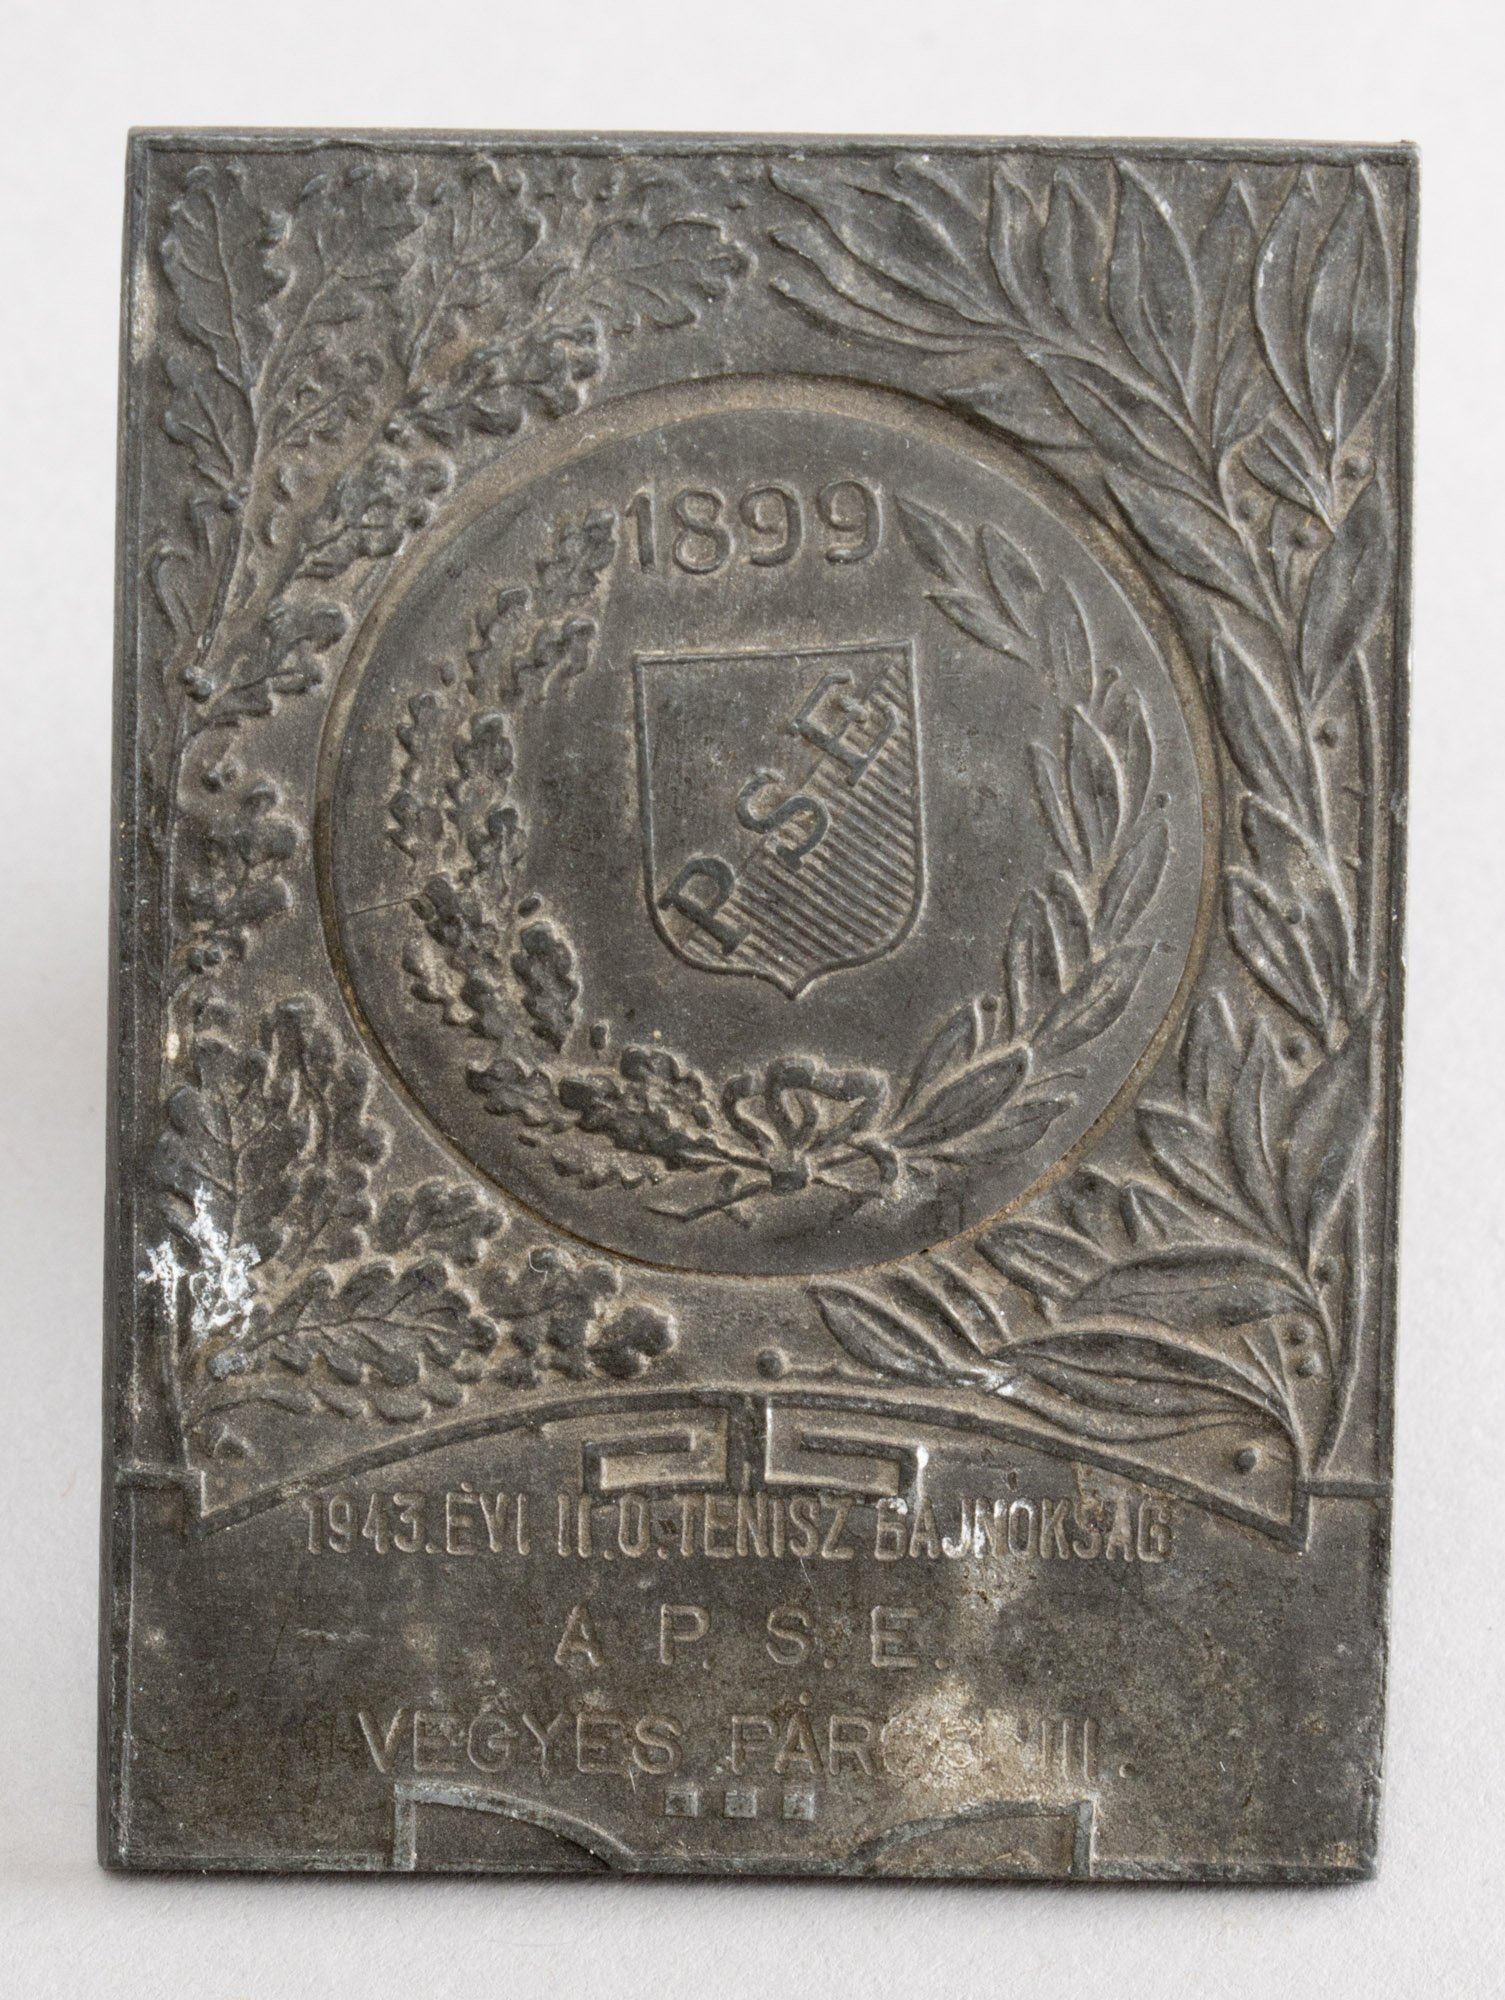 Emlékplakett (bronz) „PSE 1899 1943. ÉVI II. O. TENISZBAJNOKSÁG A P.S.E. VEGYES PÁROS III.” (Postamúzeum CC BY-NC-SA)